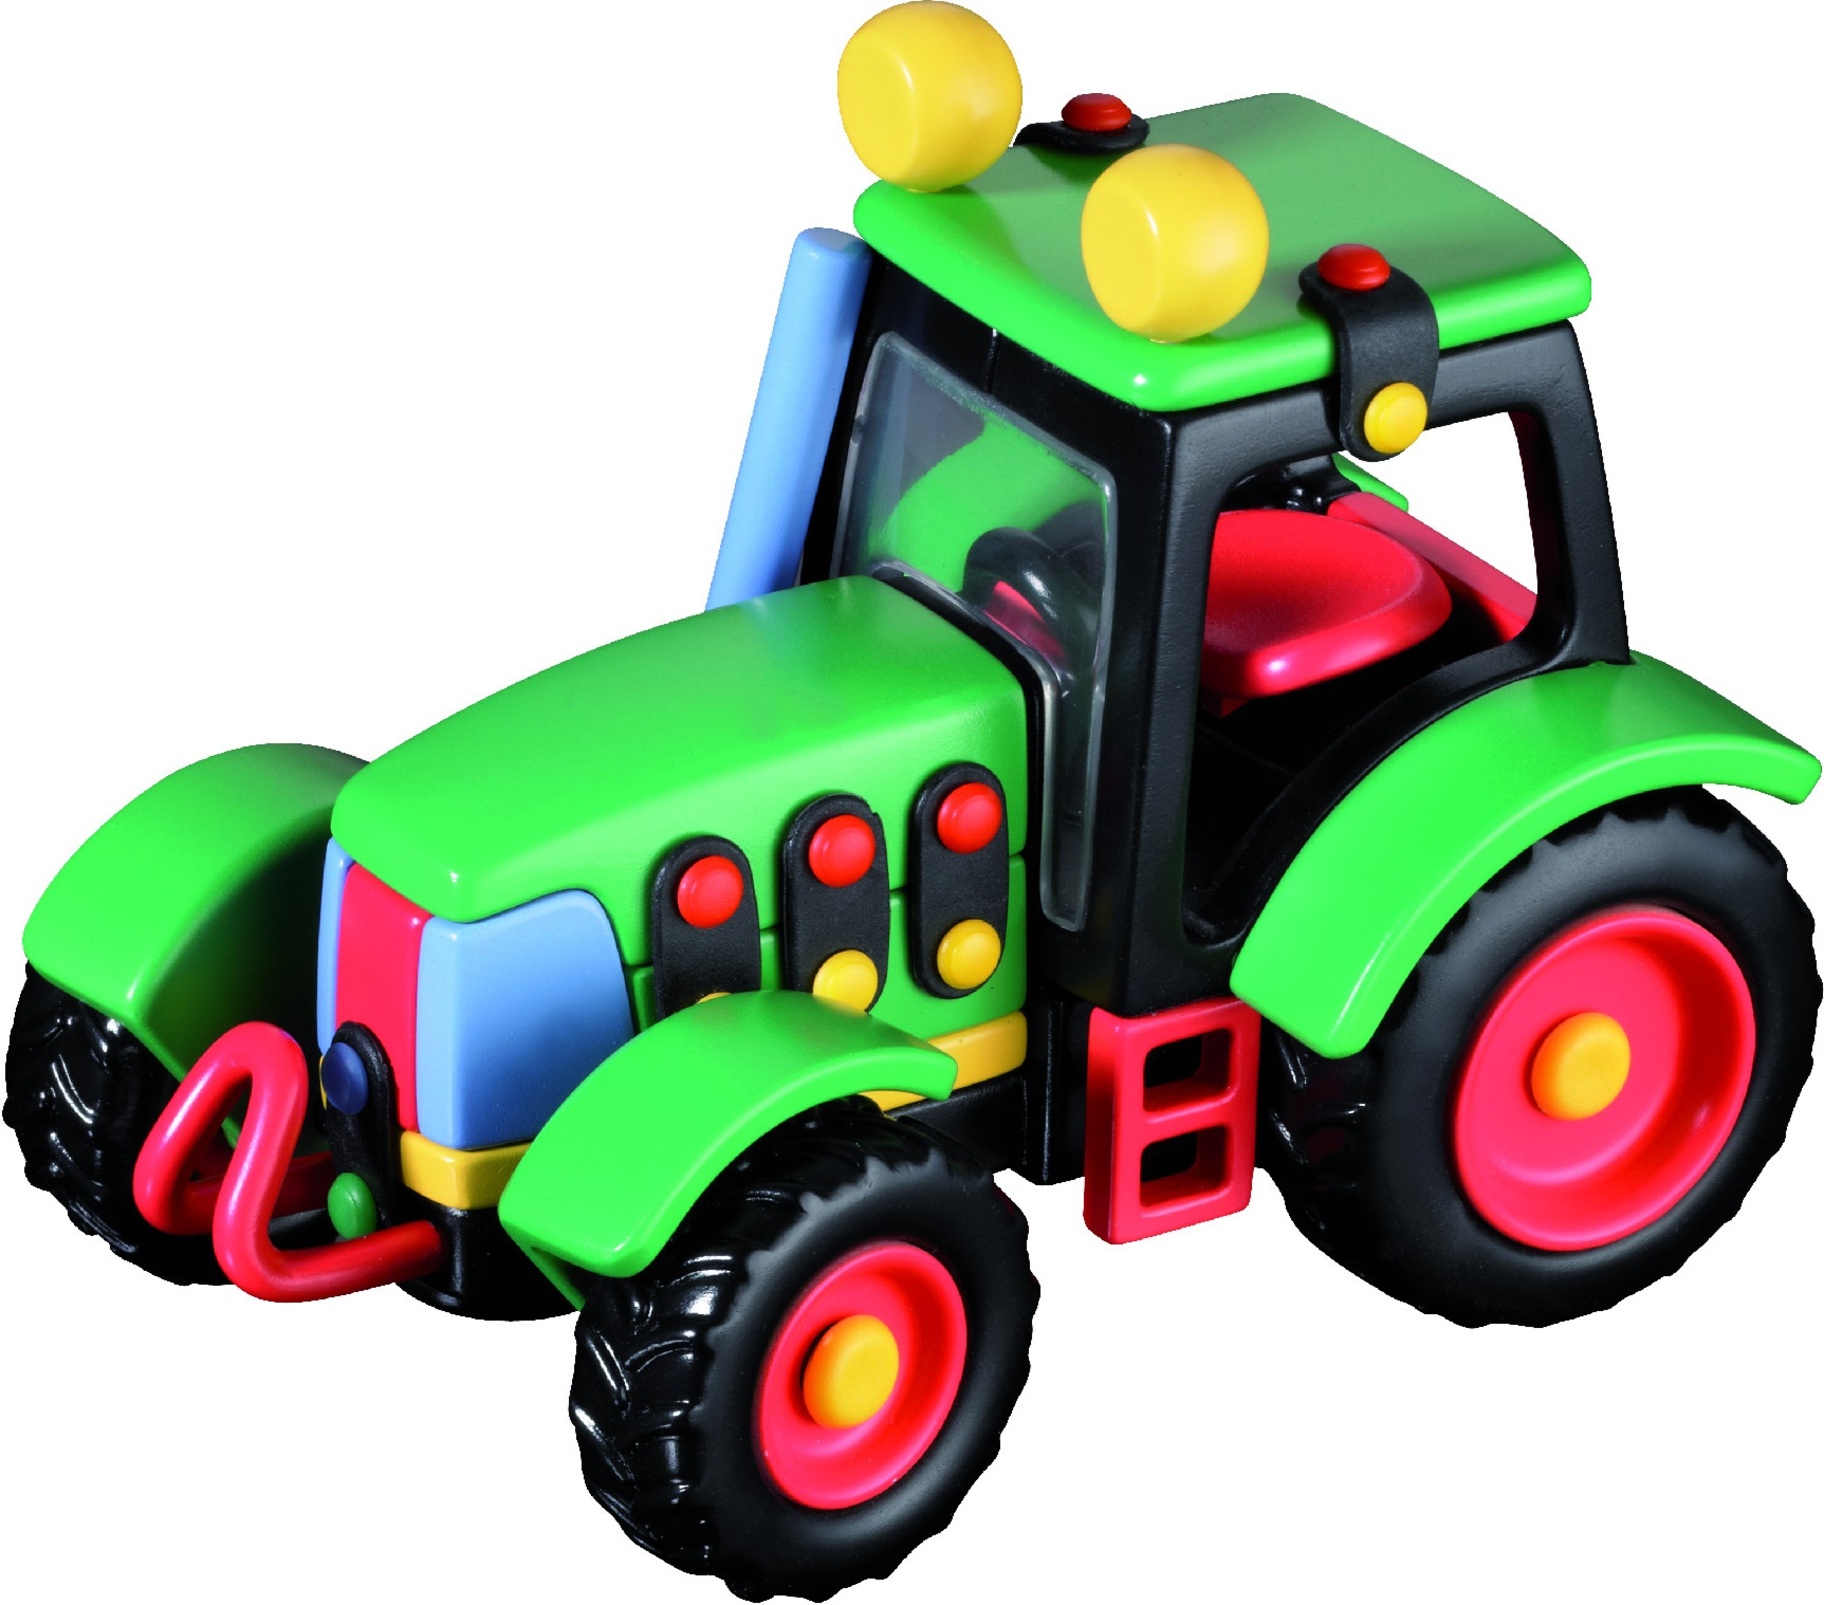 MICOMIC Malý traktor